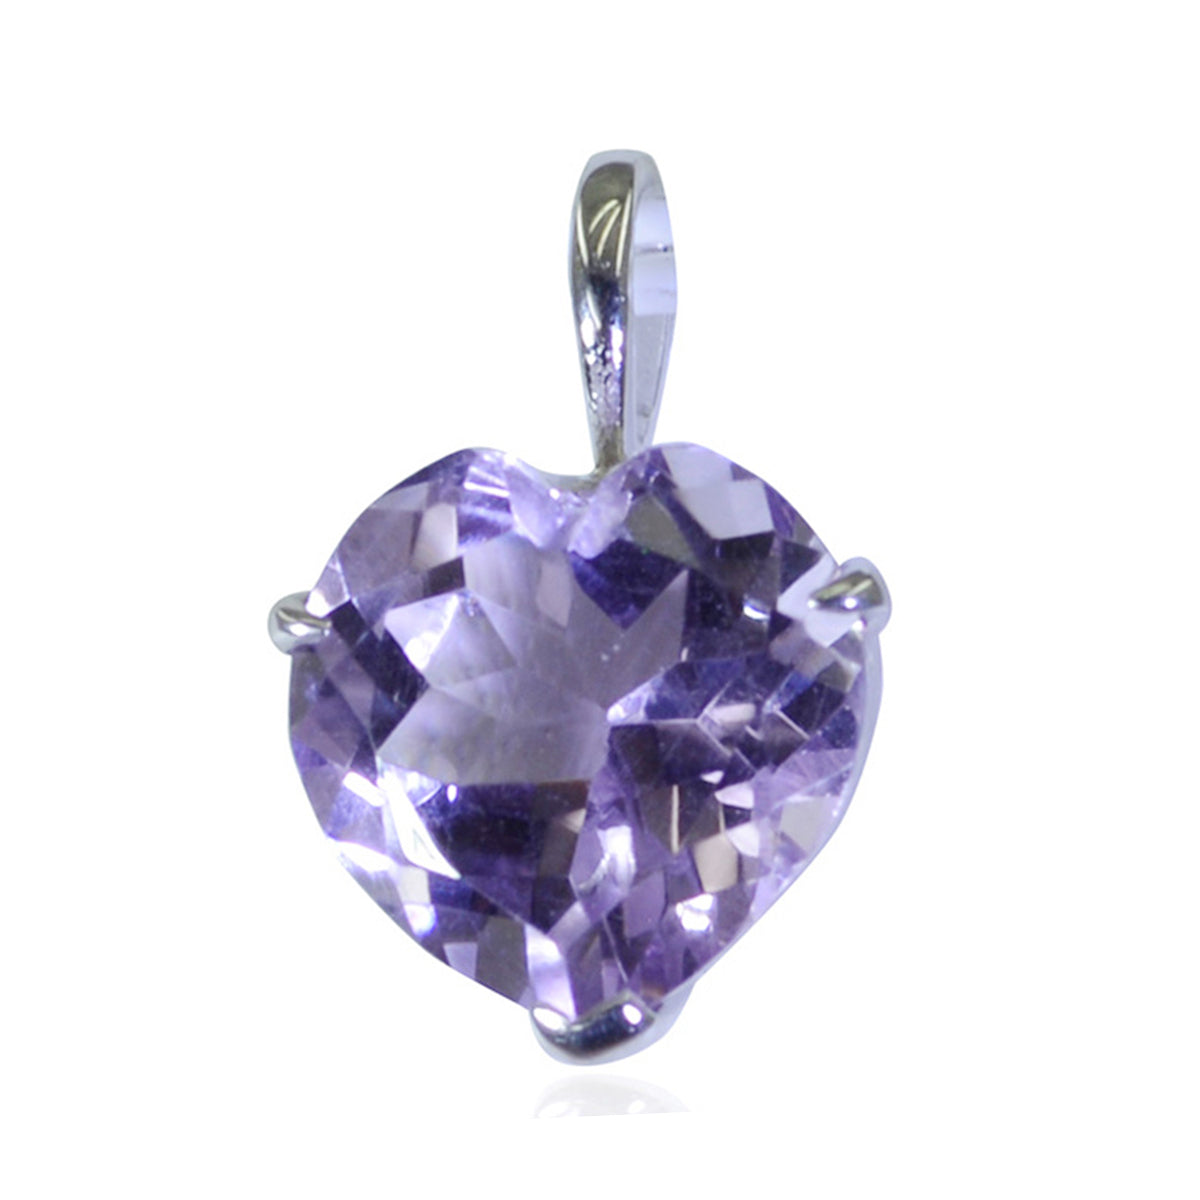 Riyo impresionantes gemas corazón facetado amatista púrpura colgante de plata maciza regalo para el domingo de Pascua